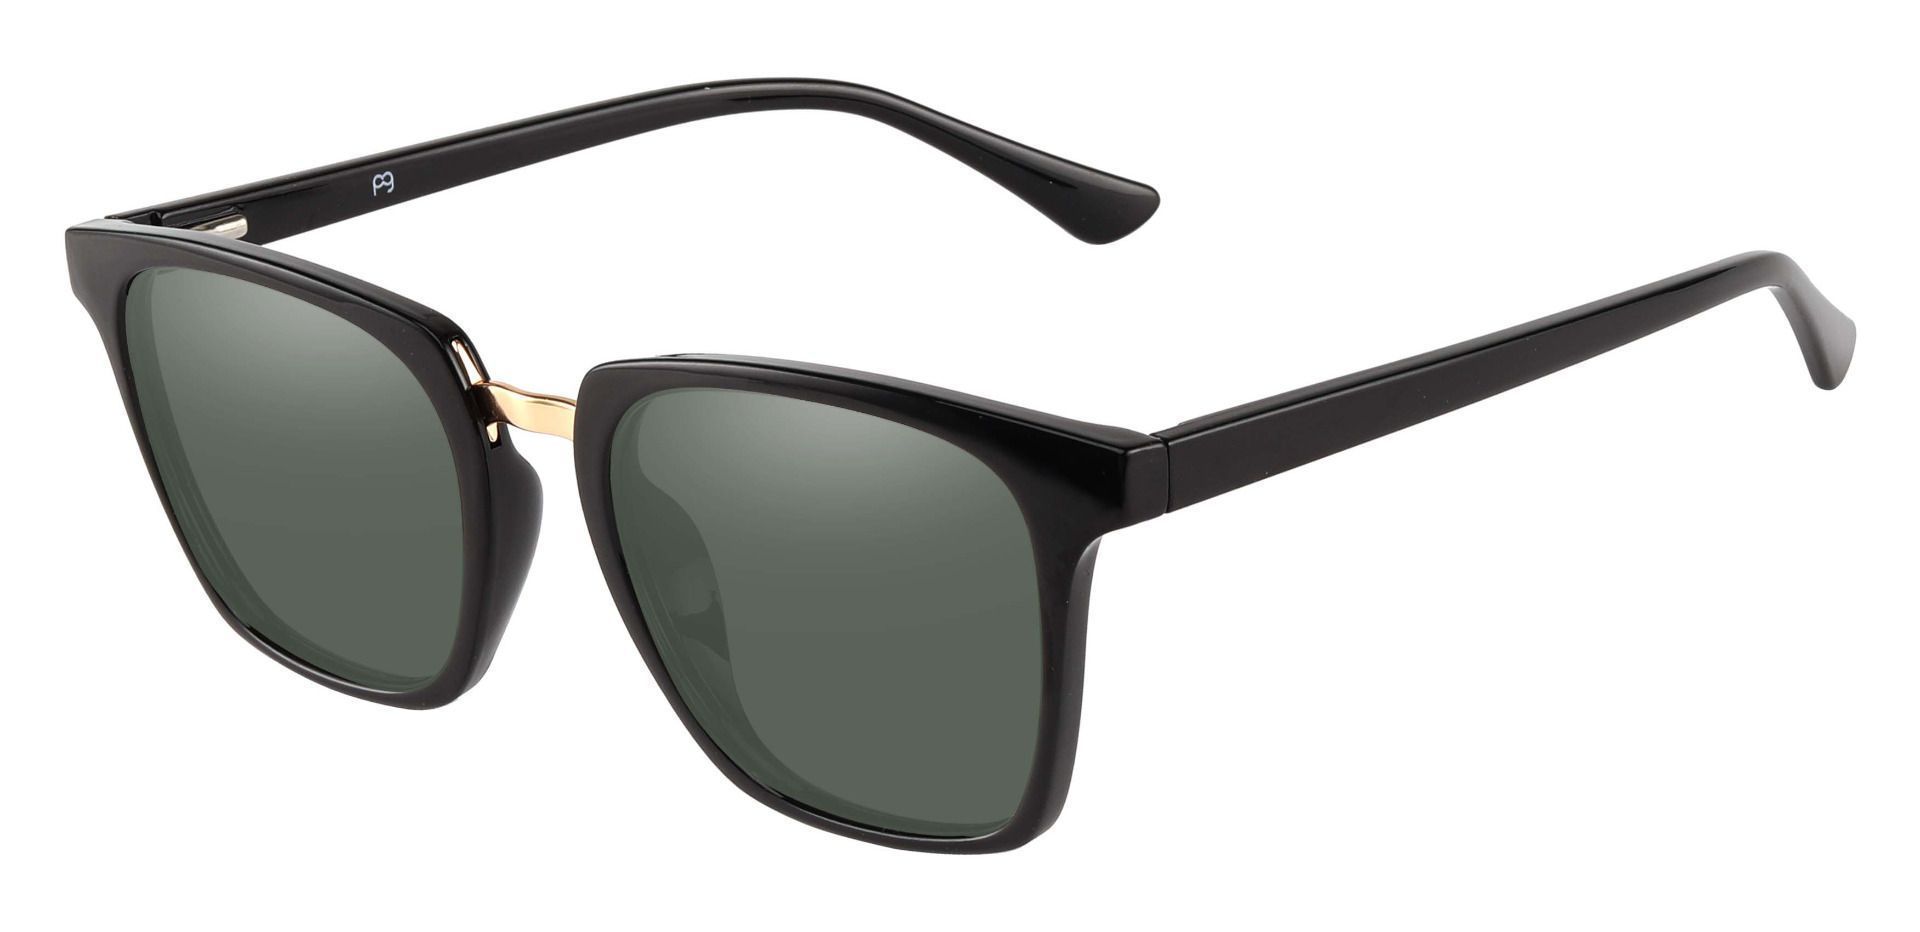 Delta Square Prescription Sunglasses - Black Frame With Green Lenses